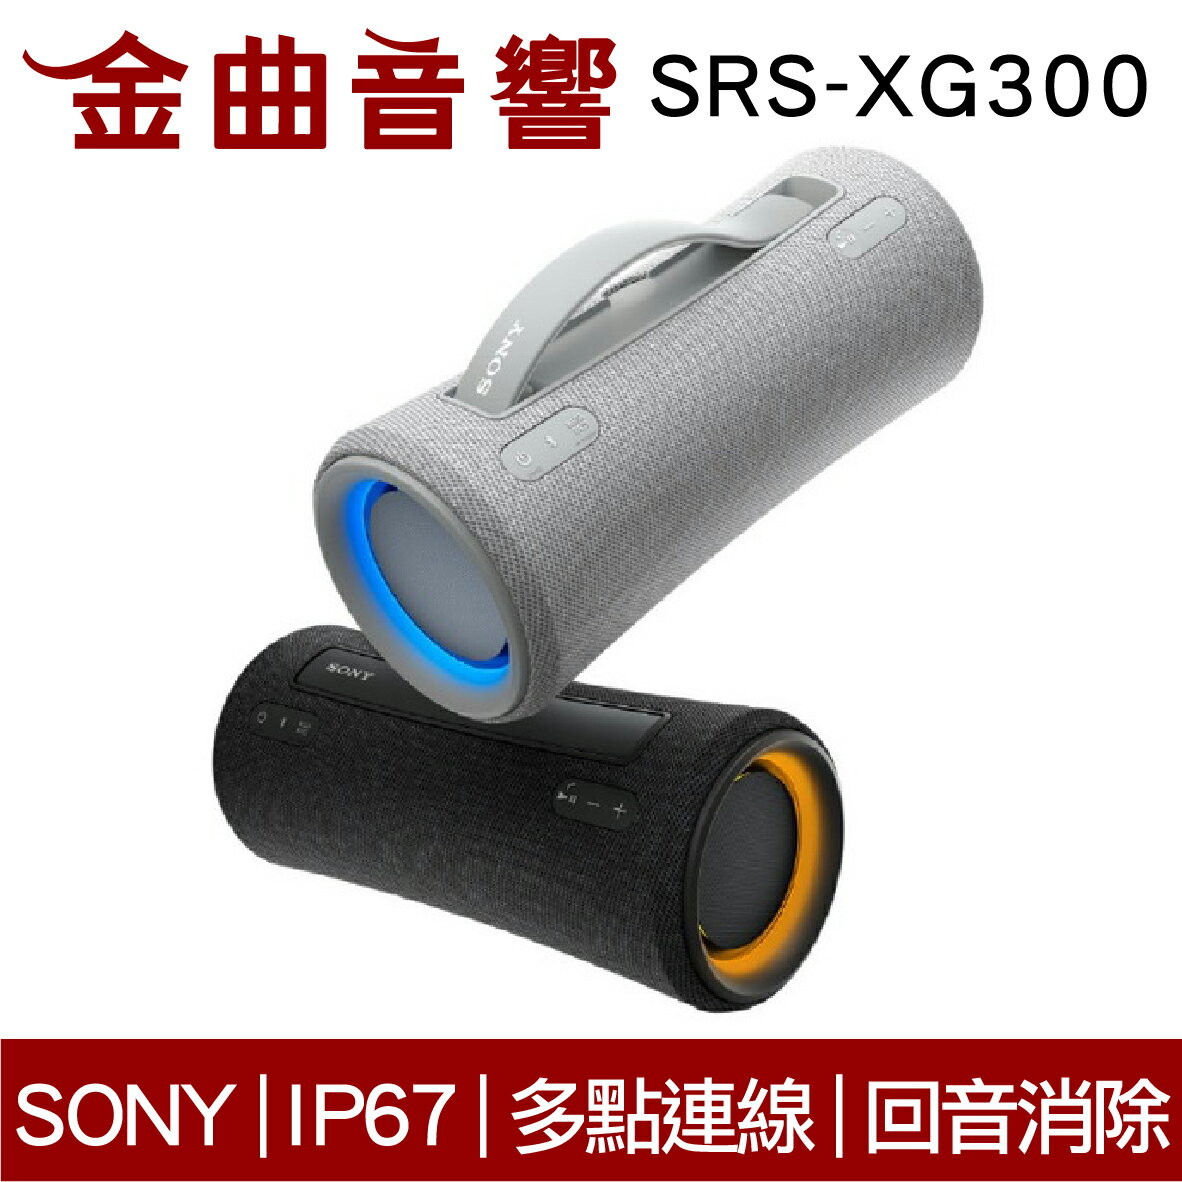 Sony 索尼 SRS-XG300 可攜式 IP67 長效續航 無線 揚聲器 藍芽喇叭 | 金曲音響